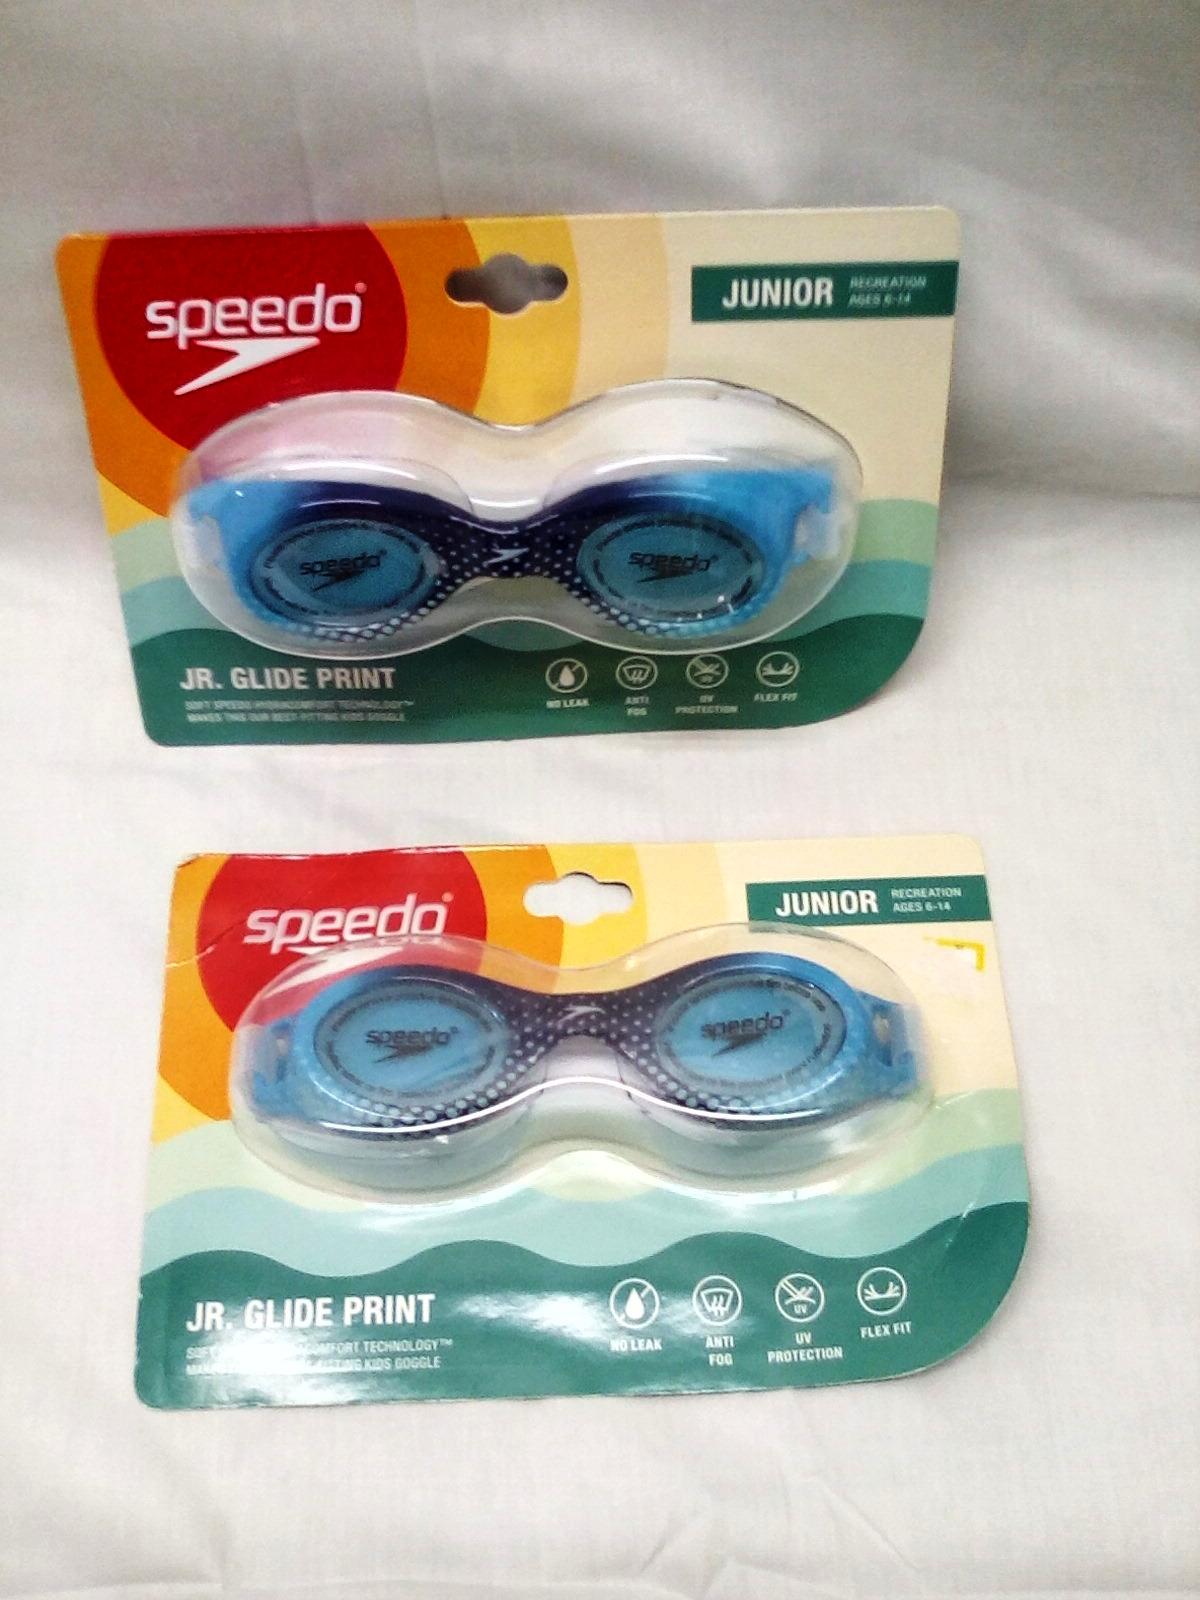 Speedo Qty. 2 Pair of Junior Ages 6-14 Swim Goggles